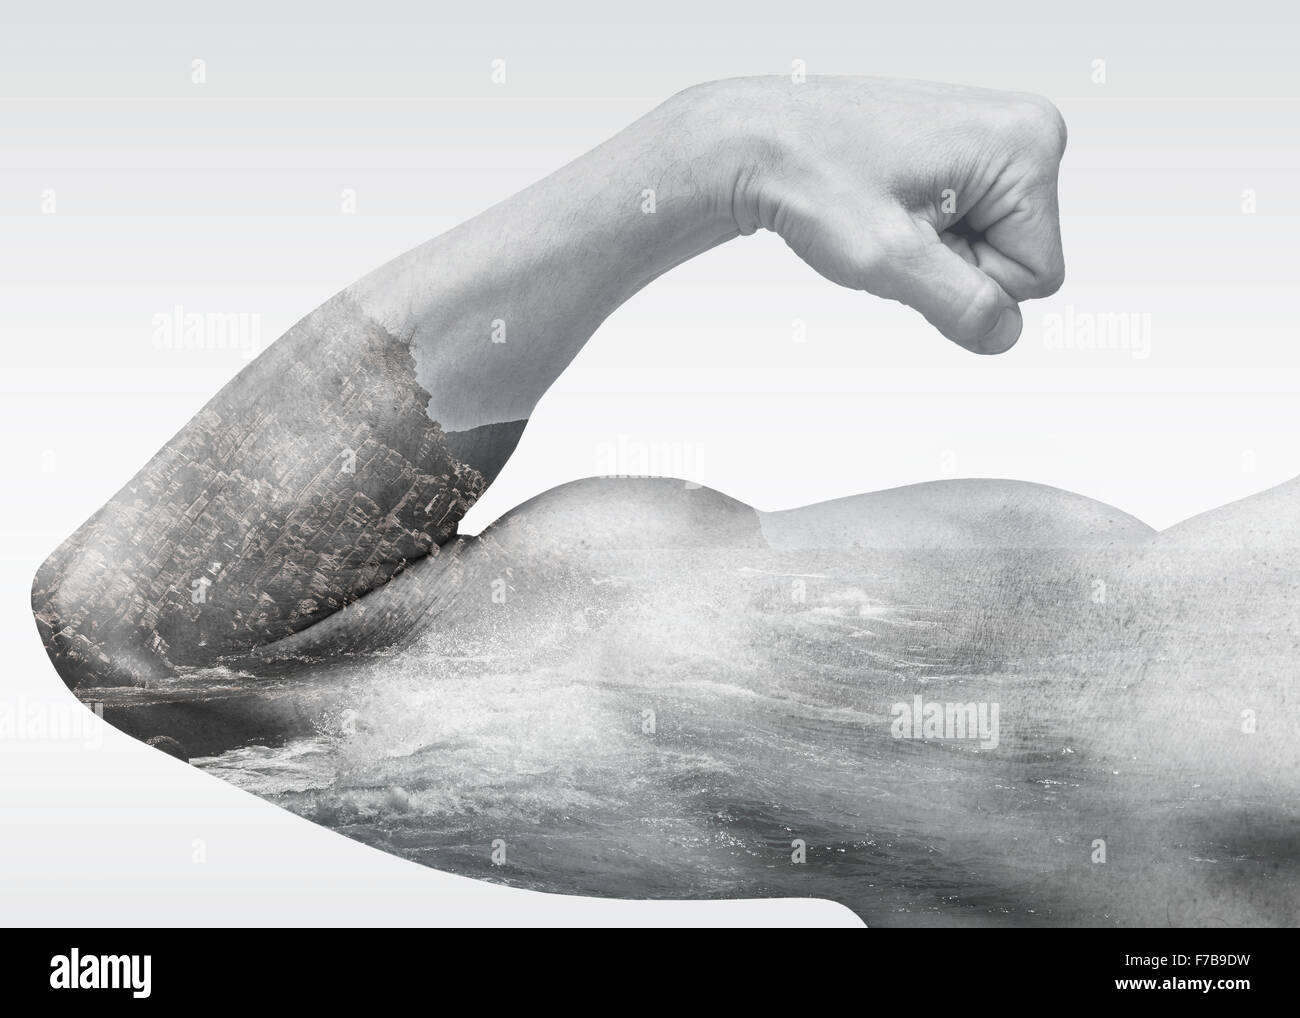 Starker männliche Arm zeigt Bizeps kombiniert mit Küstenmeeres Landschaft, doppelte Belichtung Fotoeffekt, macht der Natur Metapher Stockfoto